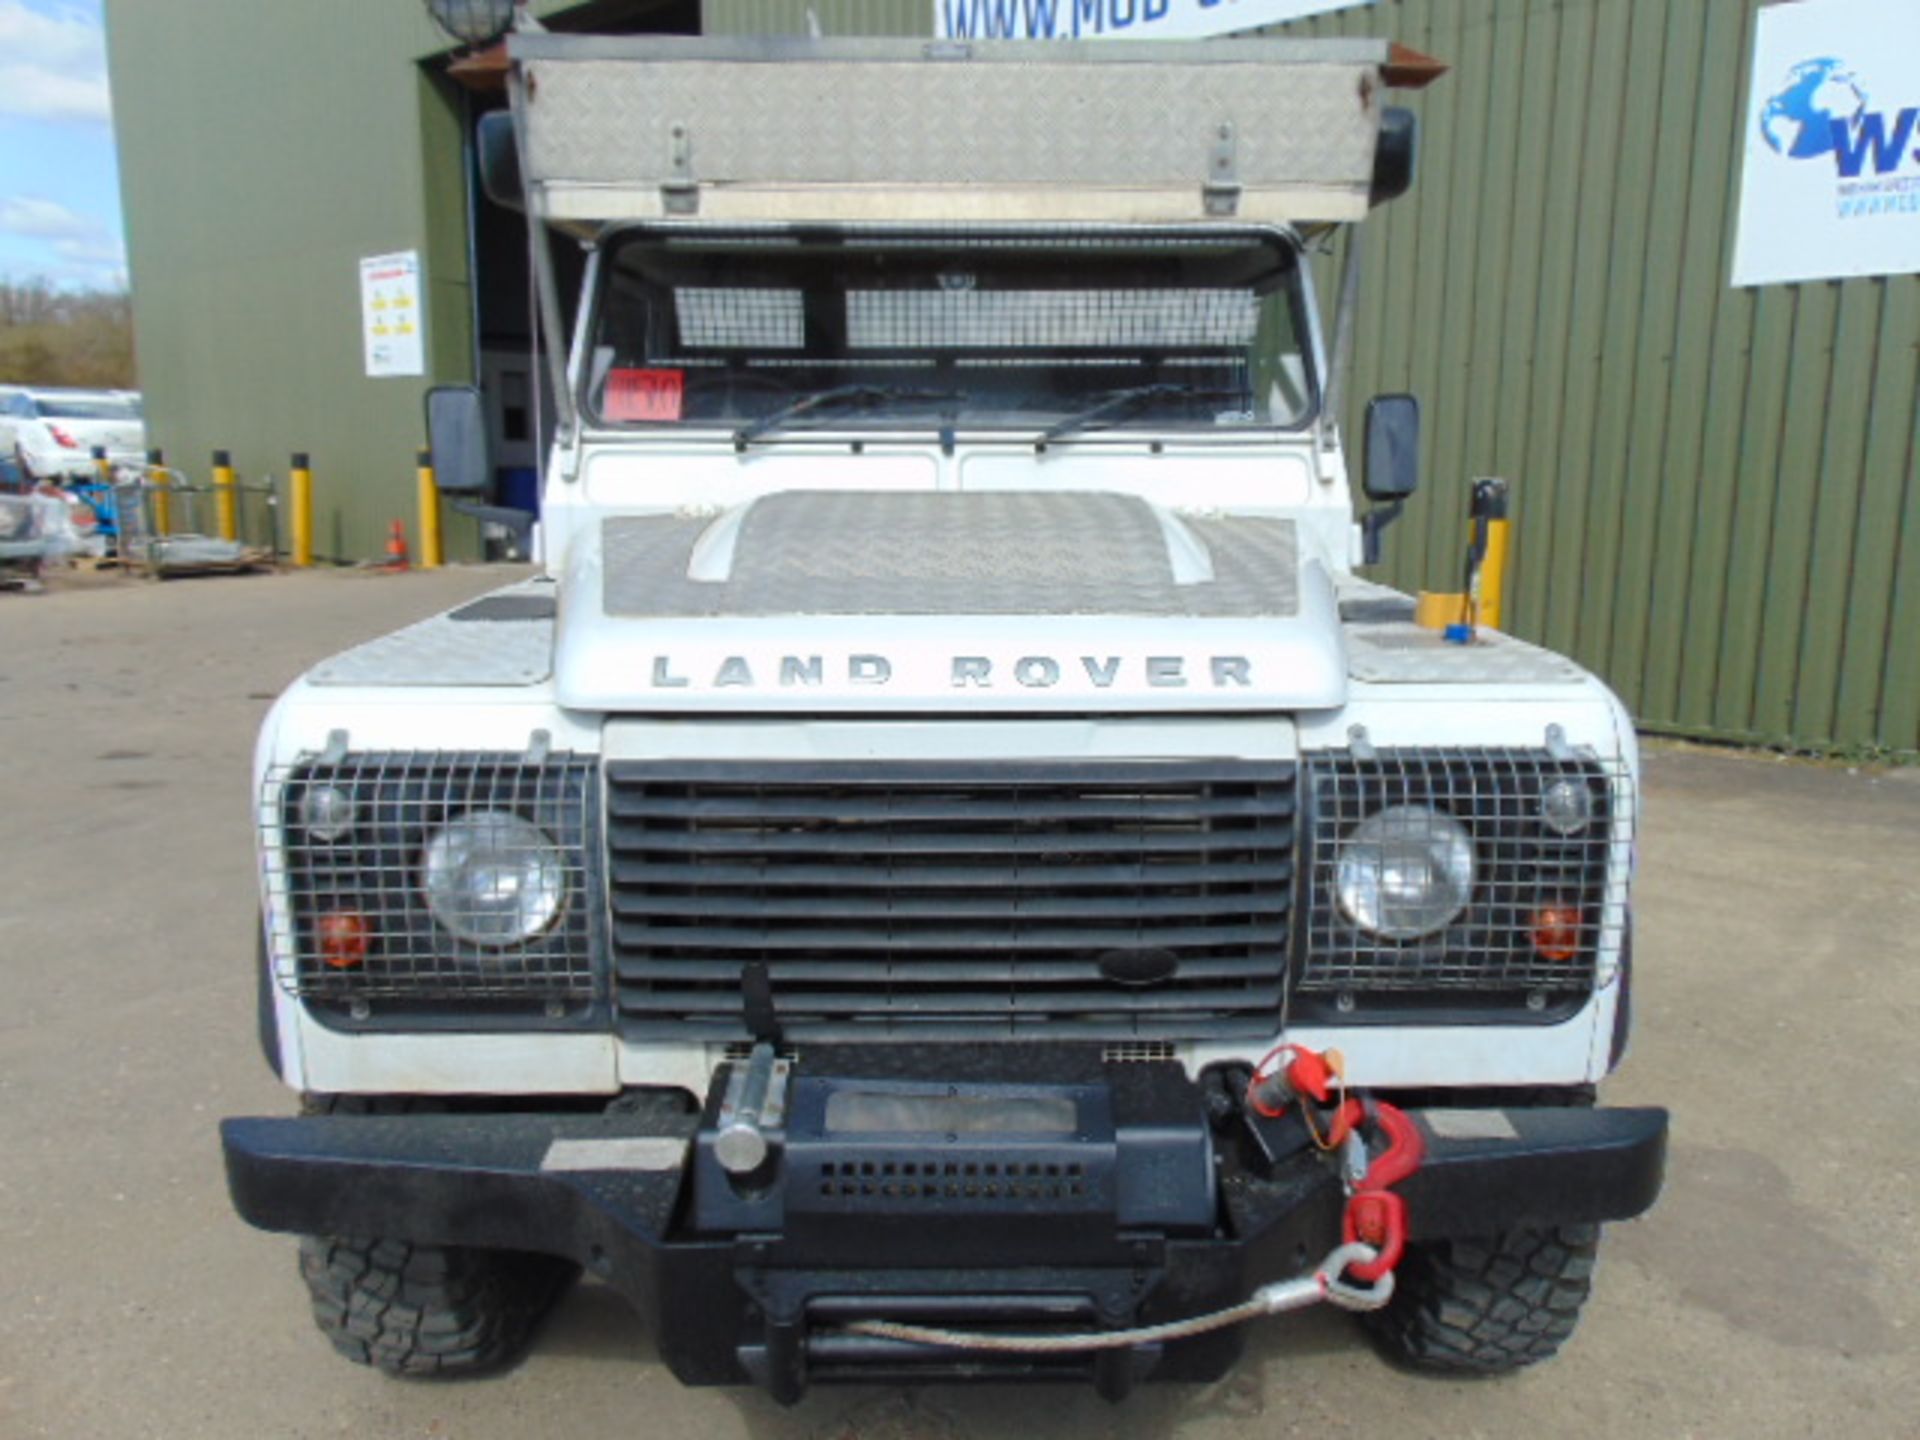 2011 Land Rover Defender 110 Puma hardtop 4x4 Utility vehicle (mobile workshop) - Image 2 of 45